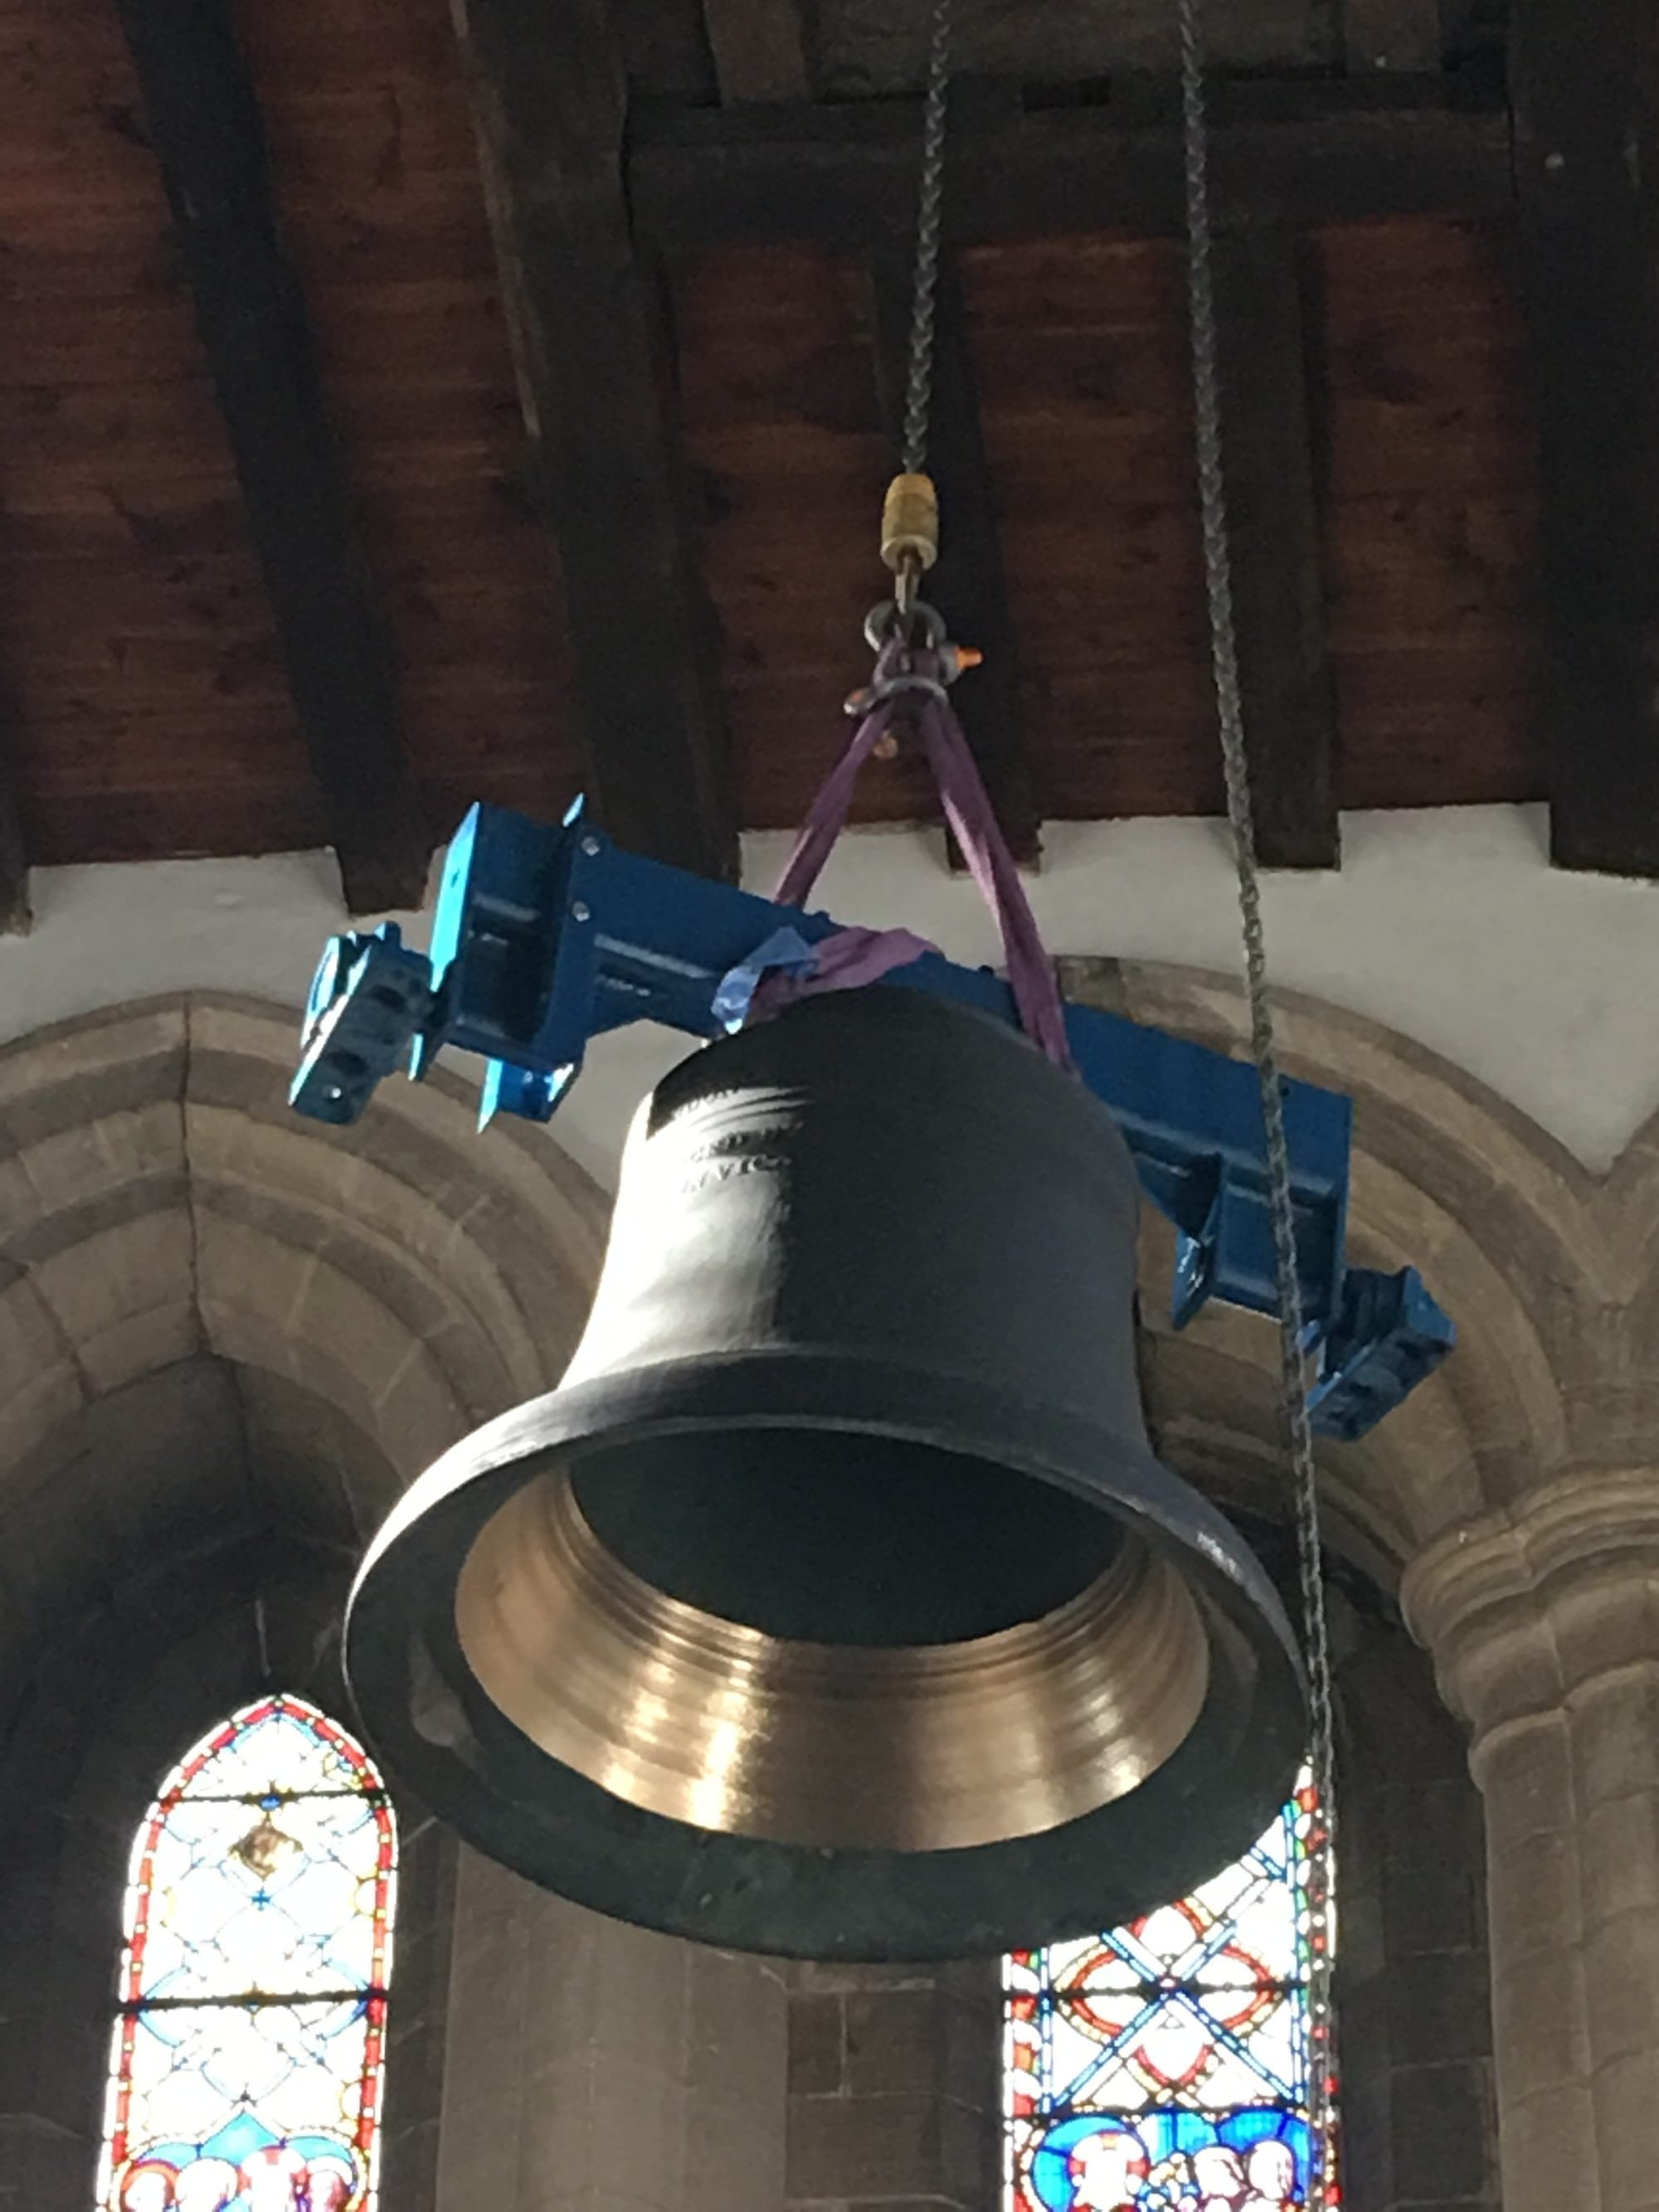 Six Church Bells Random Ringing in Celebration - titre et paroles par Sound  Ideas | Spotify